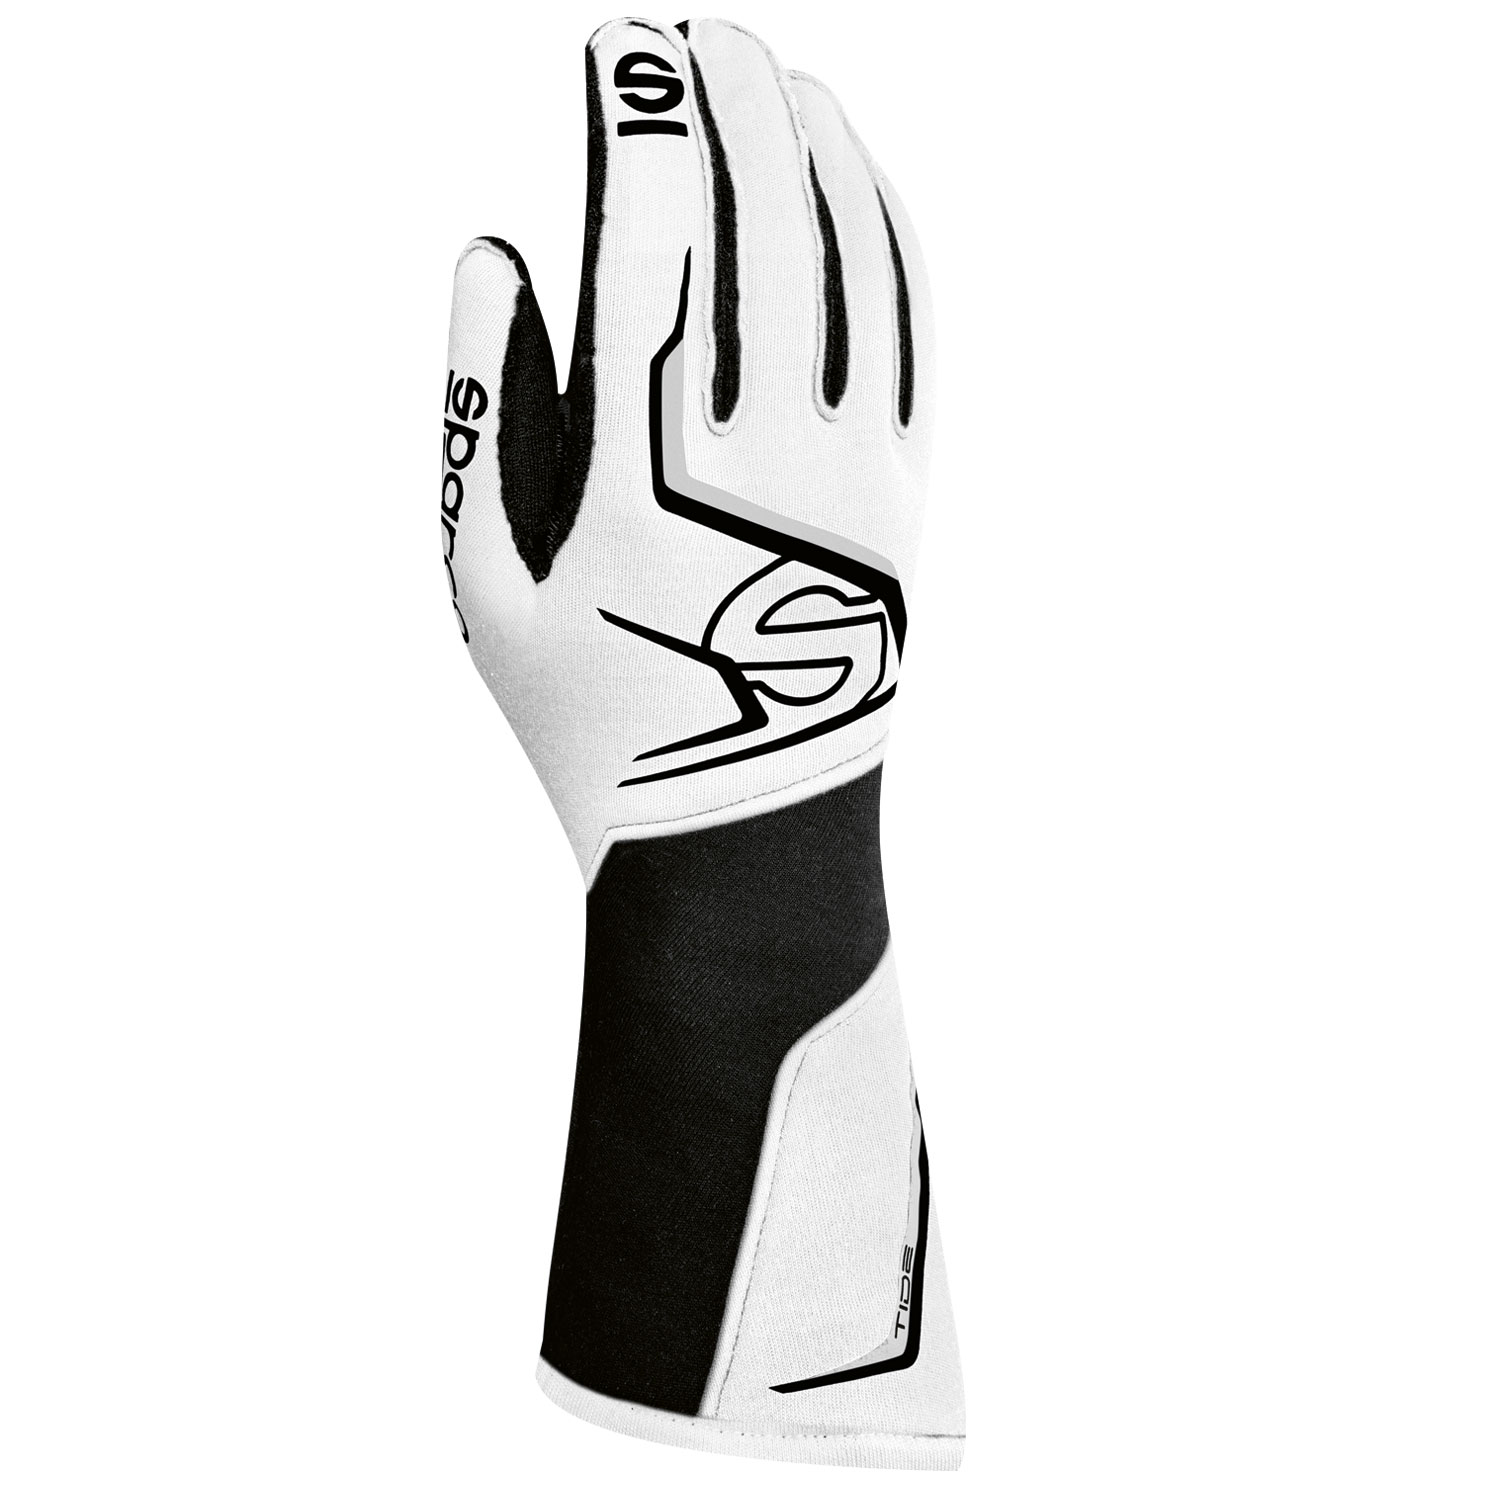 Sparco Handschuh Tide, weiß/schwarz